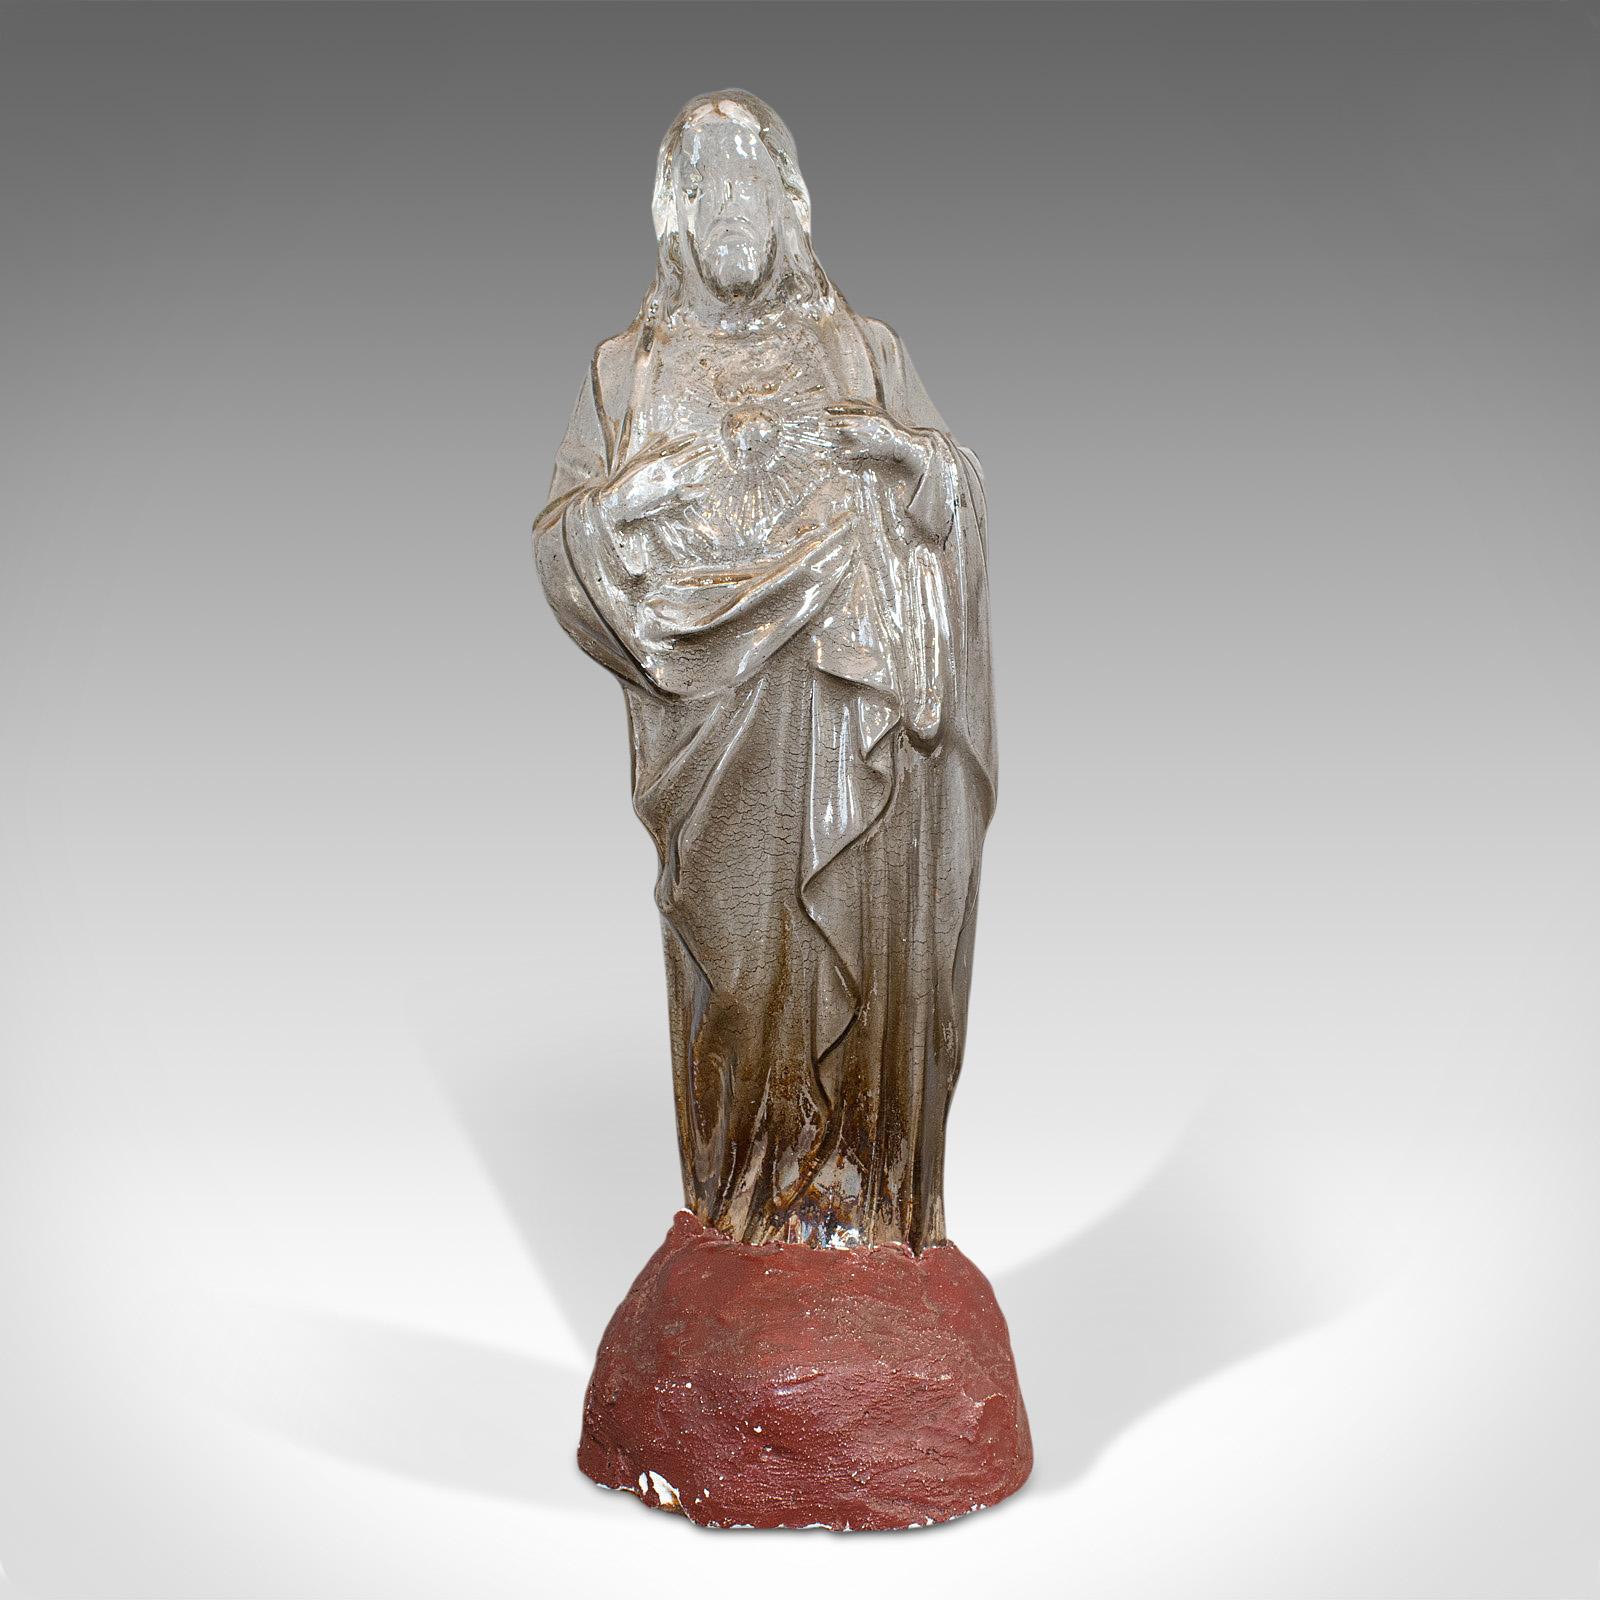 Il s'agit d'un ancien pot à bonbons. Statuette de confiserie française en verre représentant Jésus-Christ et le cœur sacré, datant de la fin du XIXe siècle, vers 1900.

Fascinante verrerie française fin de siècle
Affiche une patine vieillie